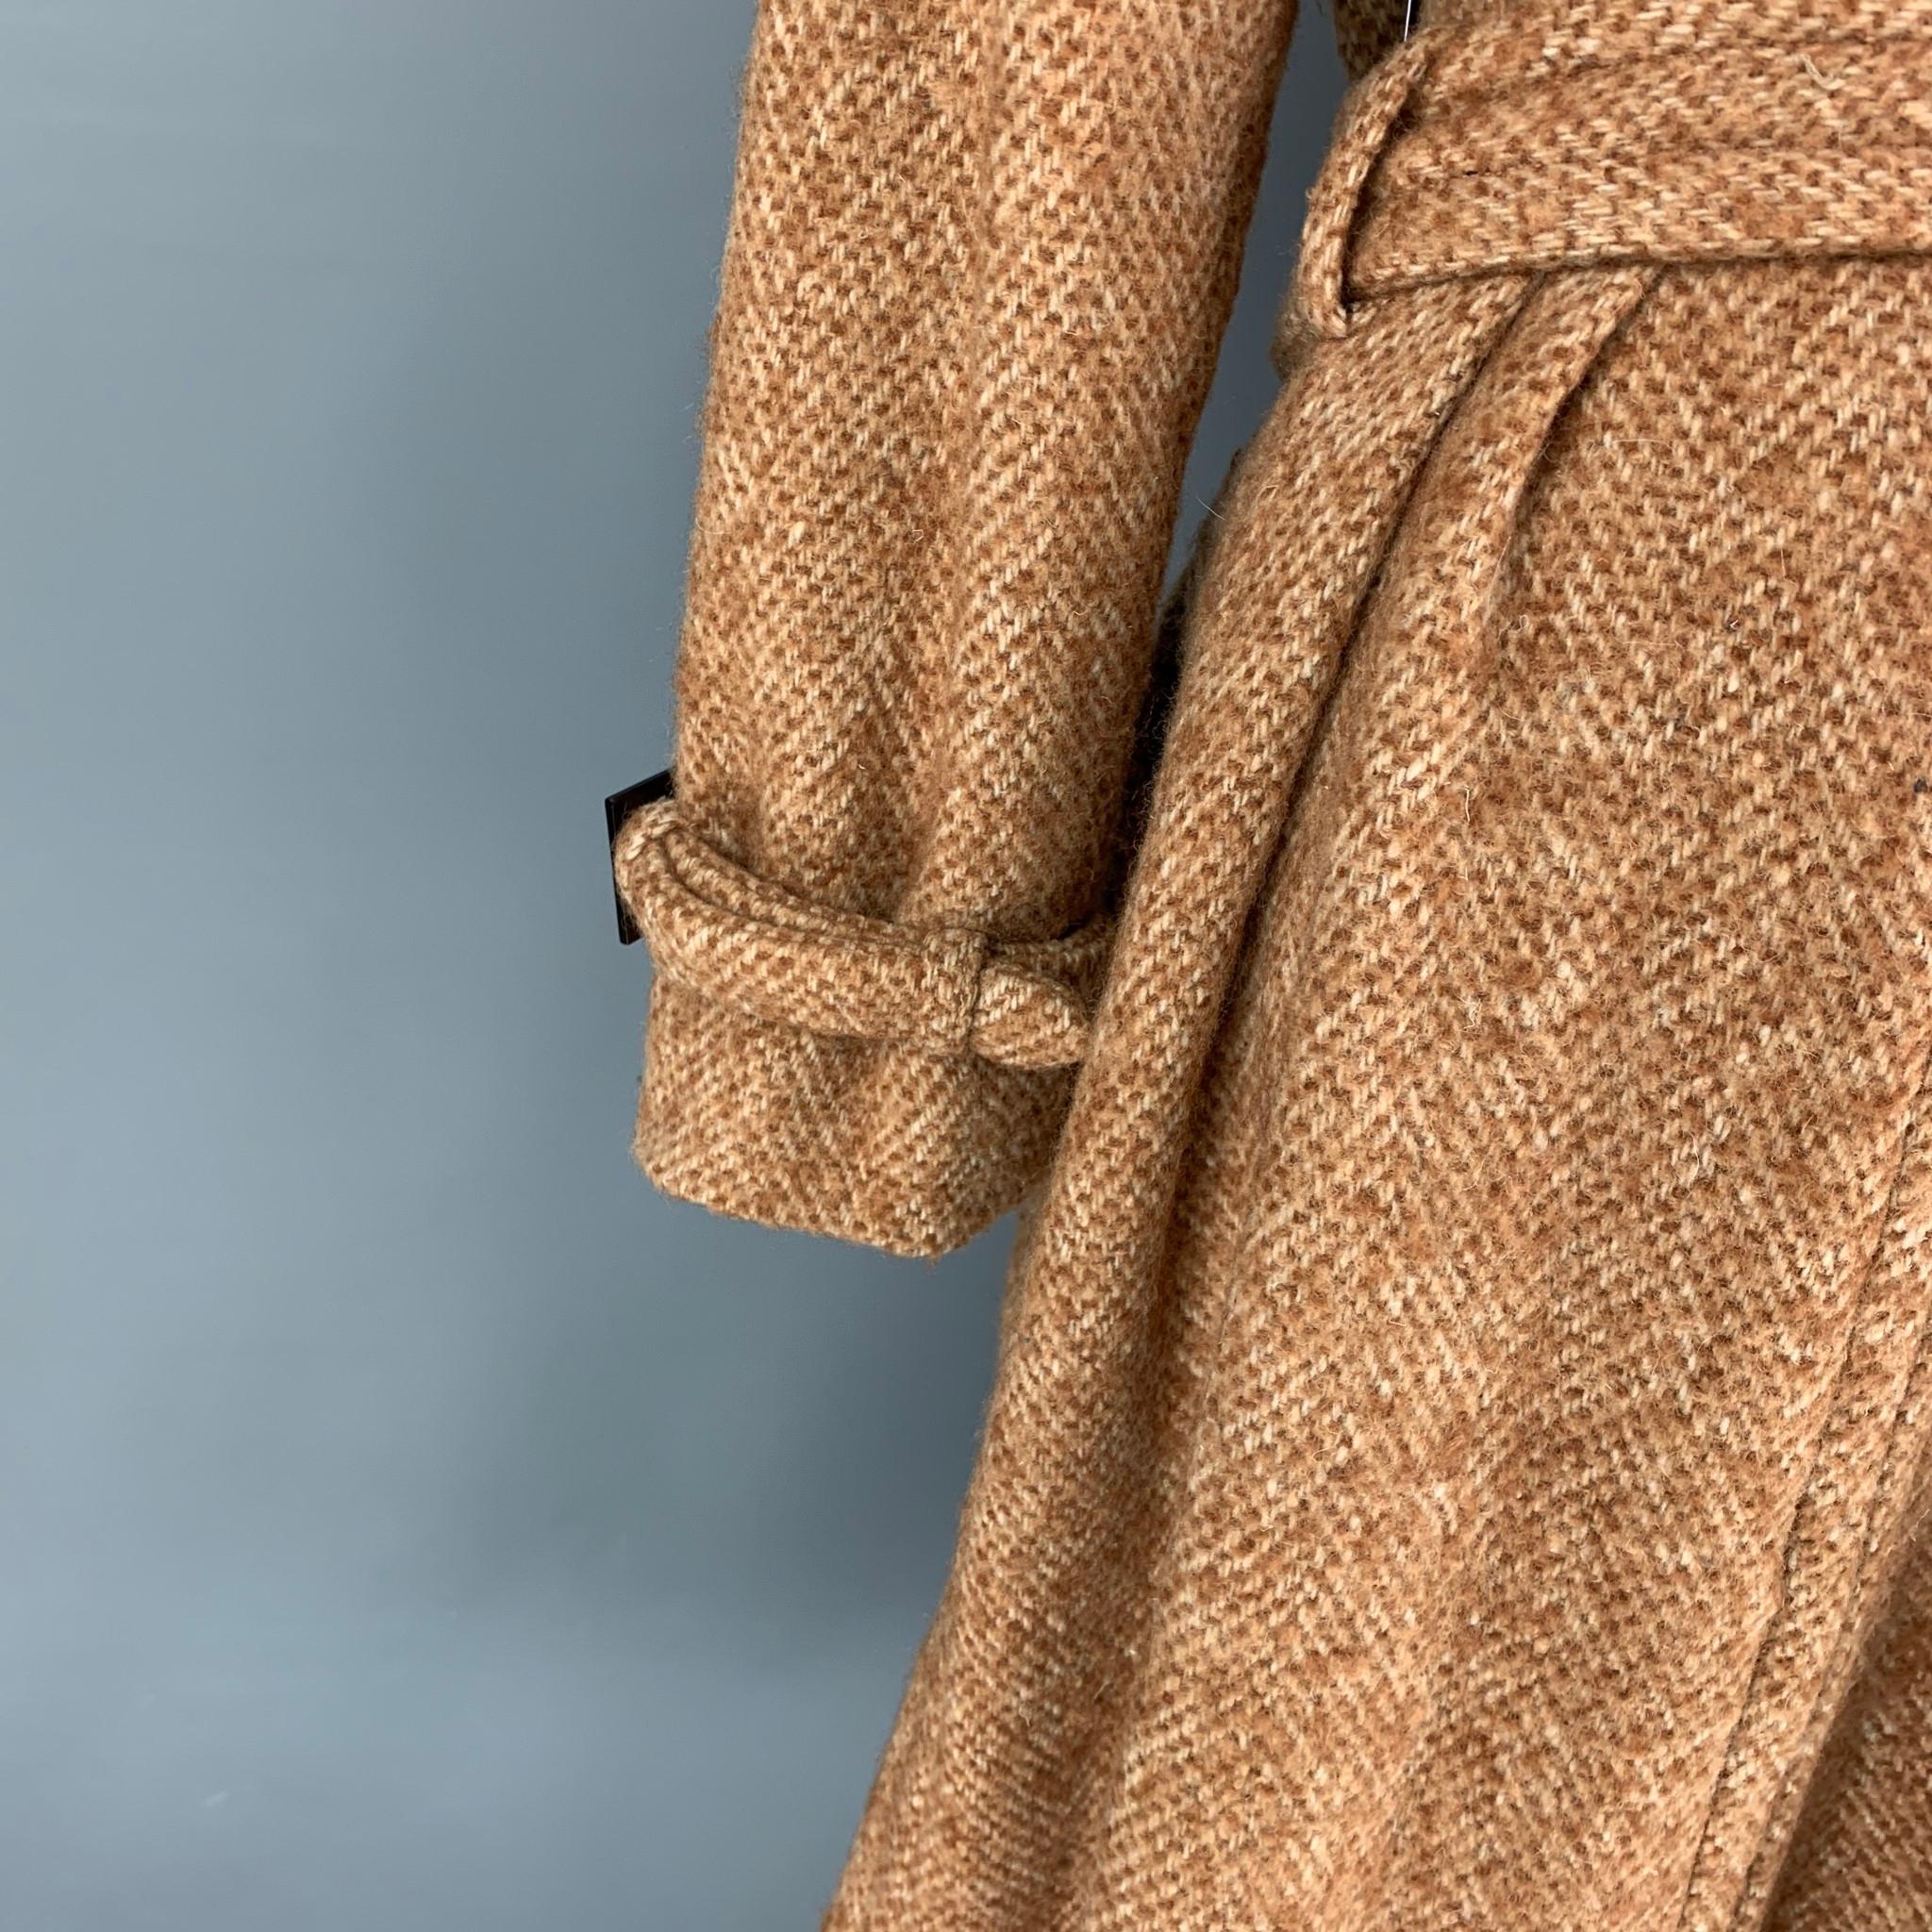  MARC JACOBS - Manteau ceinturé en tweed mélangé de laine beige et brun clair, taille 12 Pour femmes 